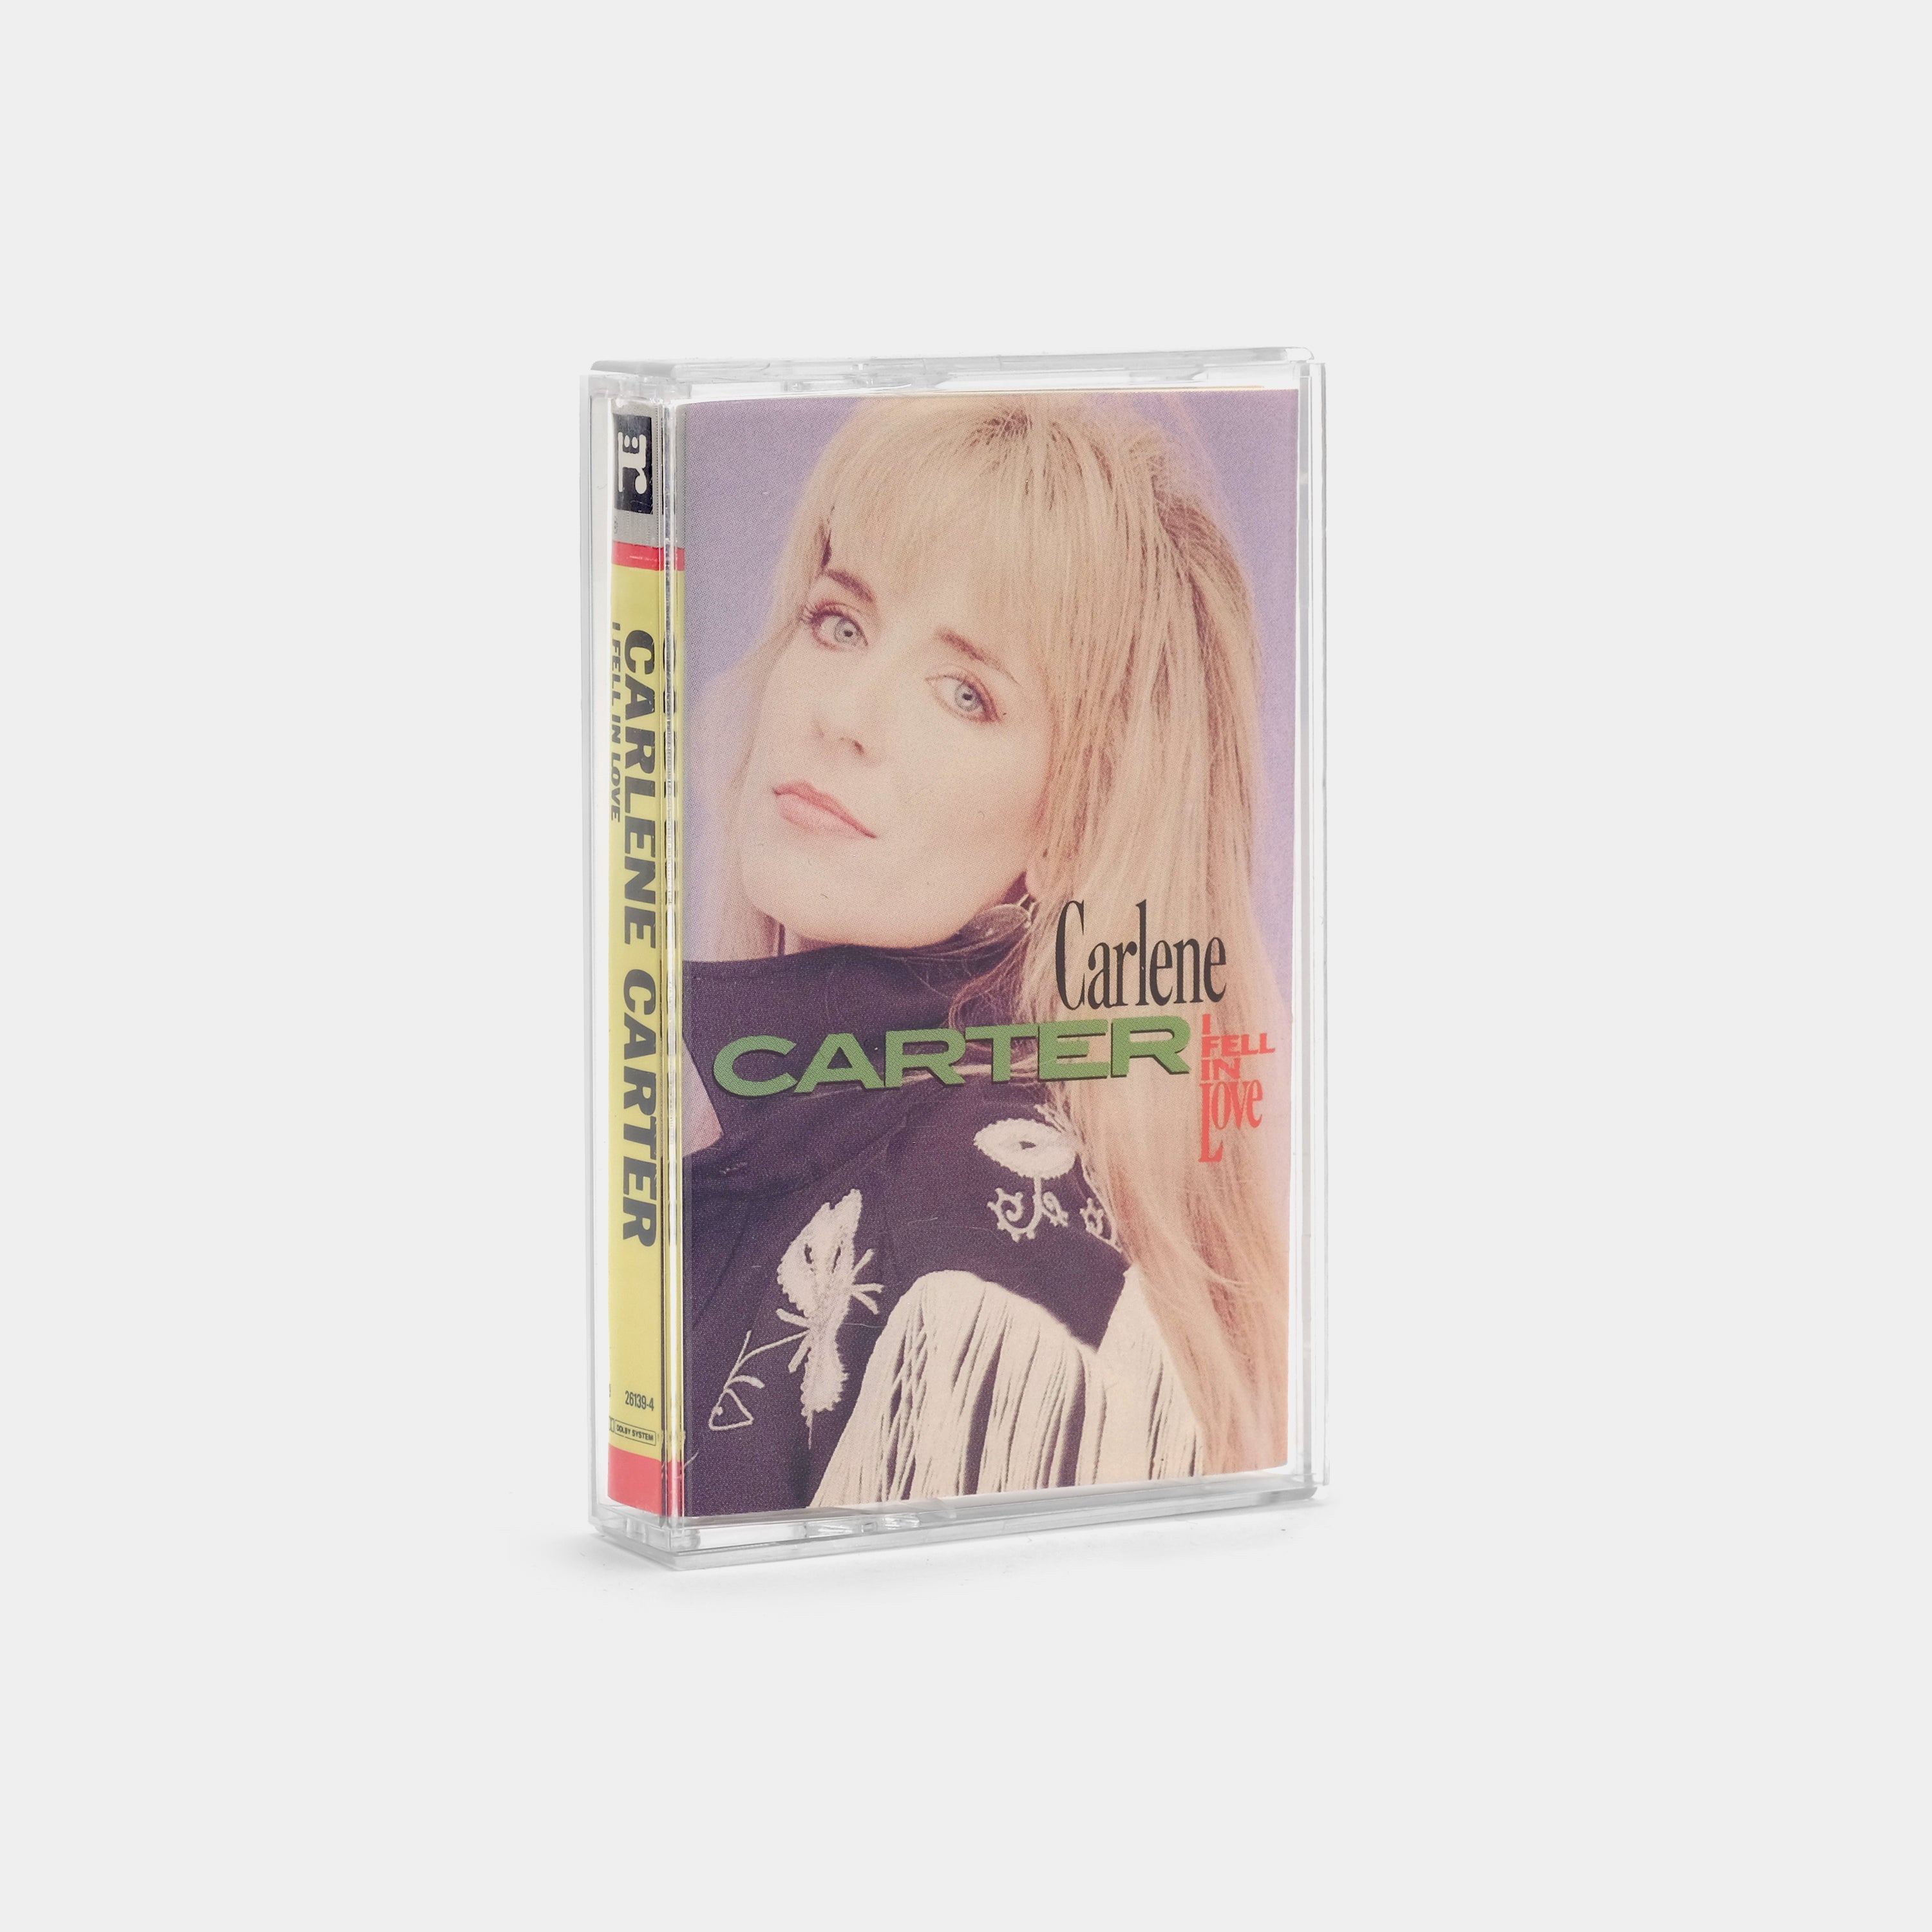 Carlene Carter - I Fell In Love Cassette Tape